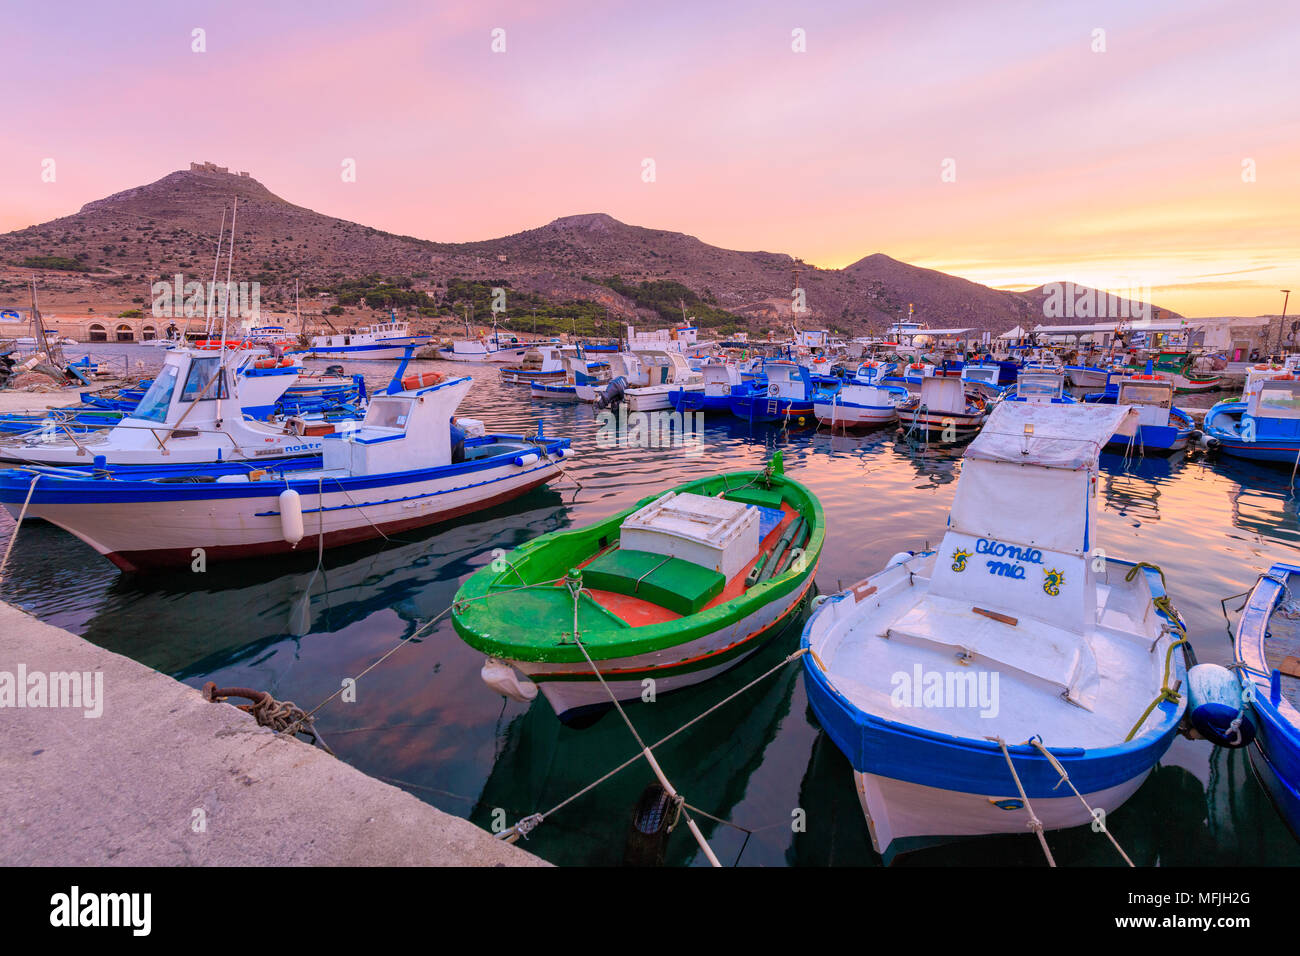 Barche da pesca presso il porto, l'isola di Favignana, Isole Egadi, provincia di Trapani, Sicilia, Italia, Mediterraneo, Europa Foto Stock